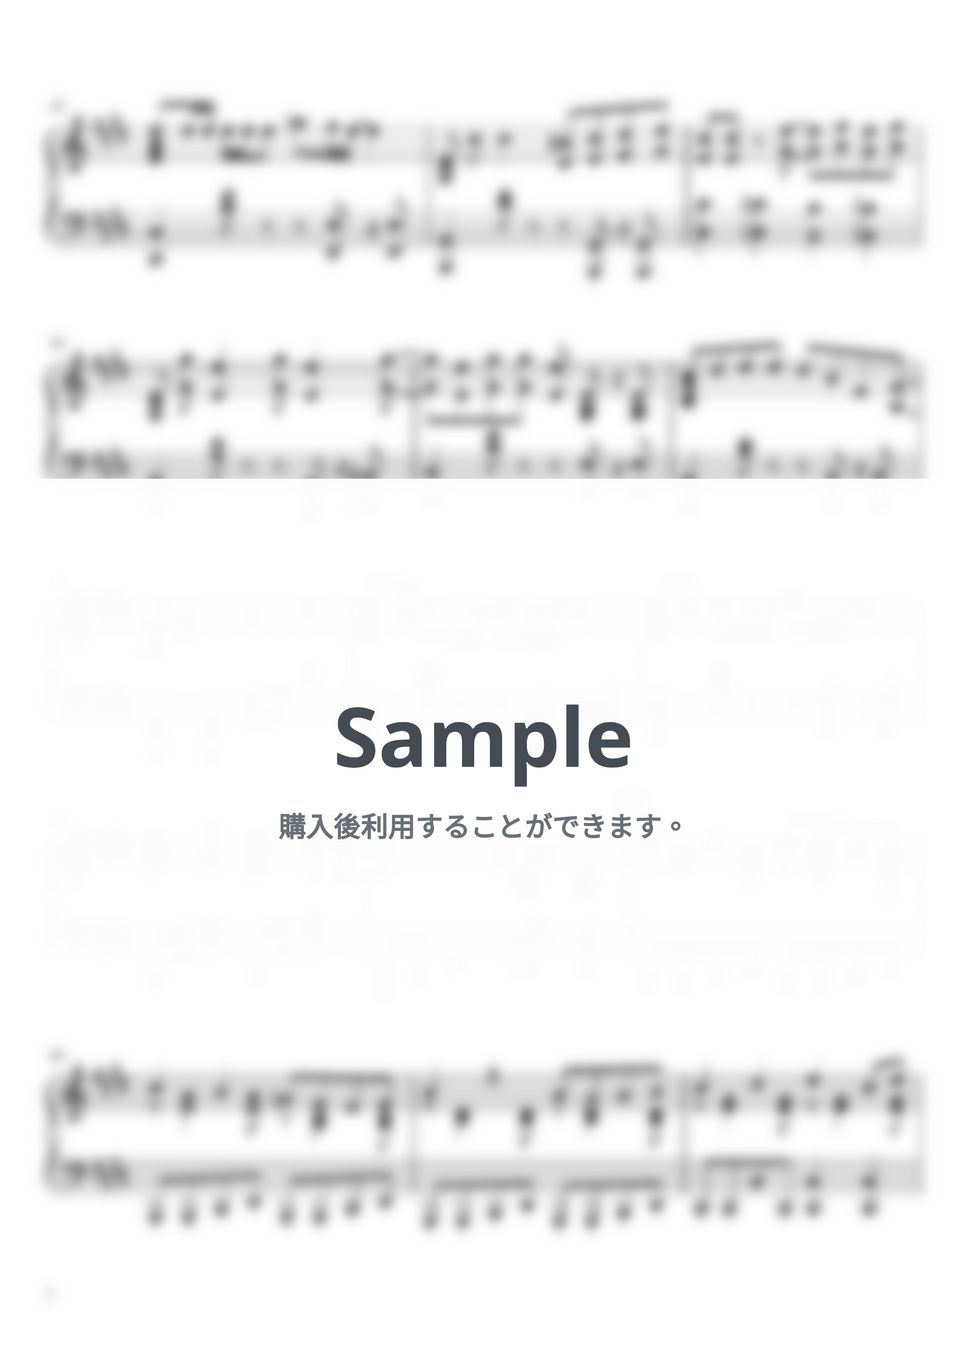 マカロニえんぴつ - 愛のレンタル (ピアノソロ / 上級) by SuperMomoFactory